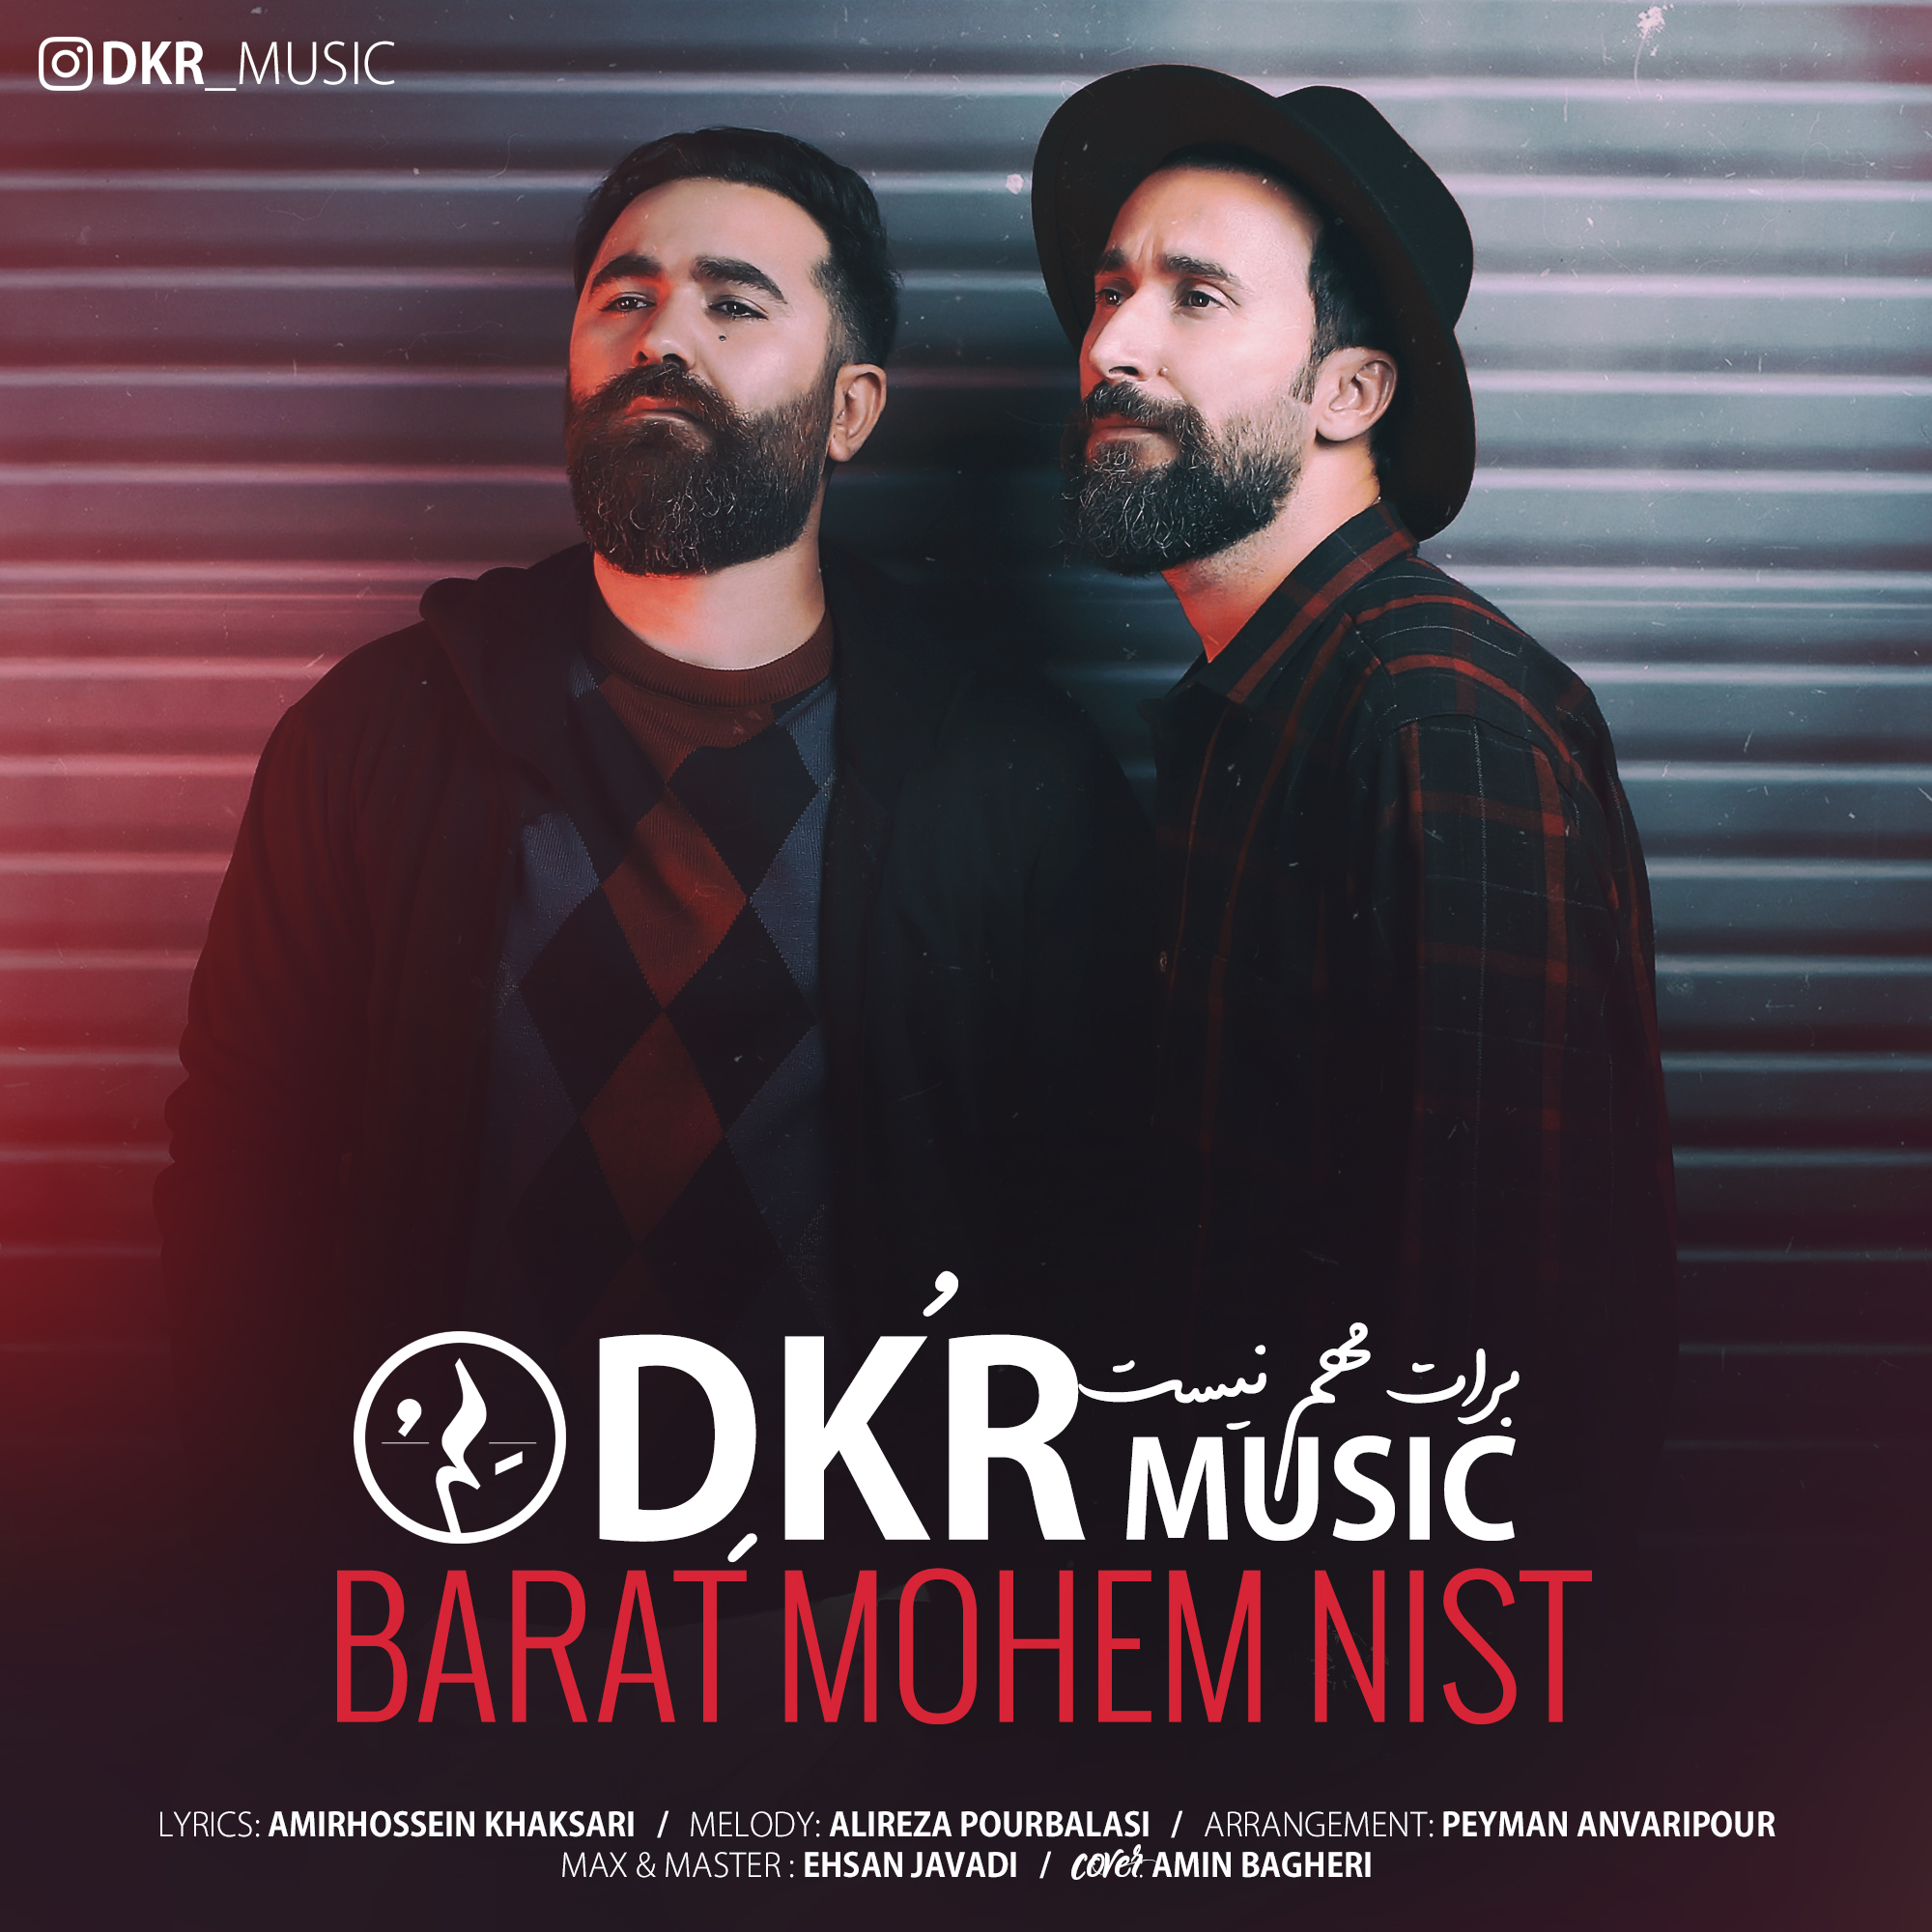  دانلود آهنگ جدید دِکُر - برات مهم نیست | Download New Music By Dkr - Barat Mohem Nist